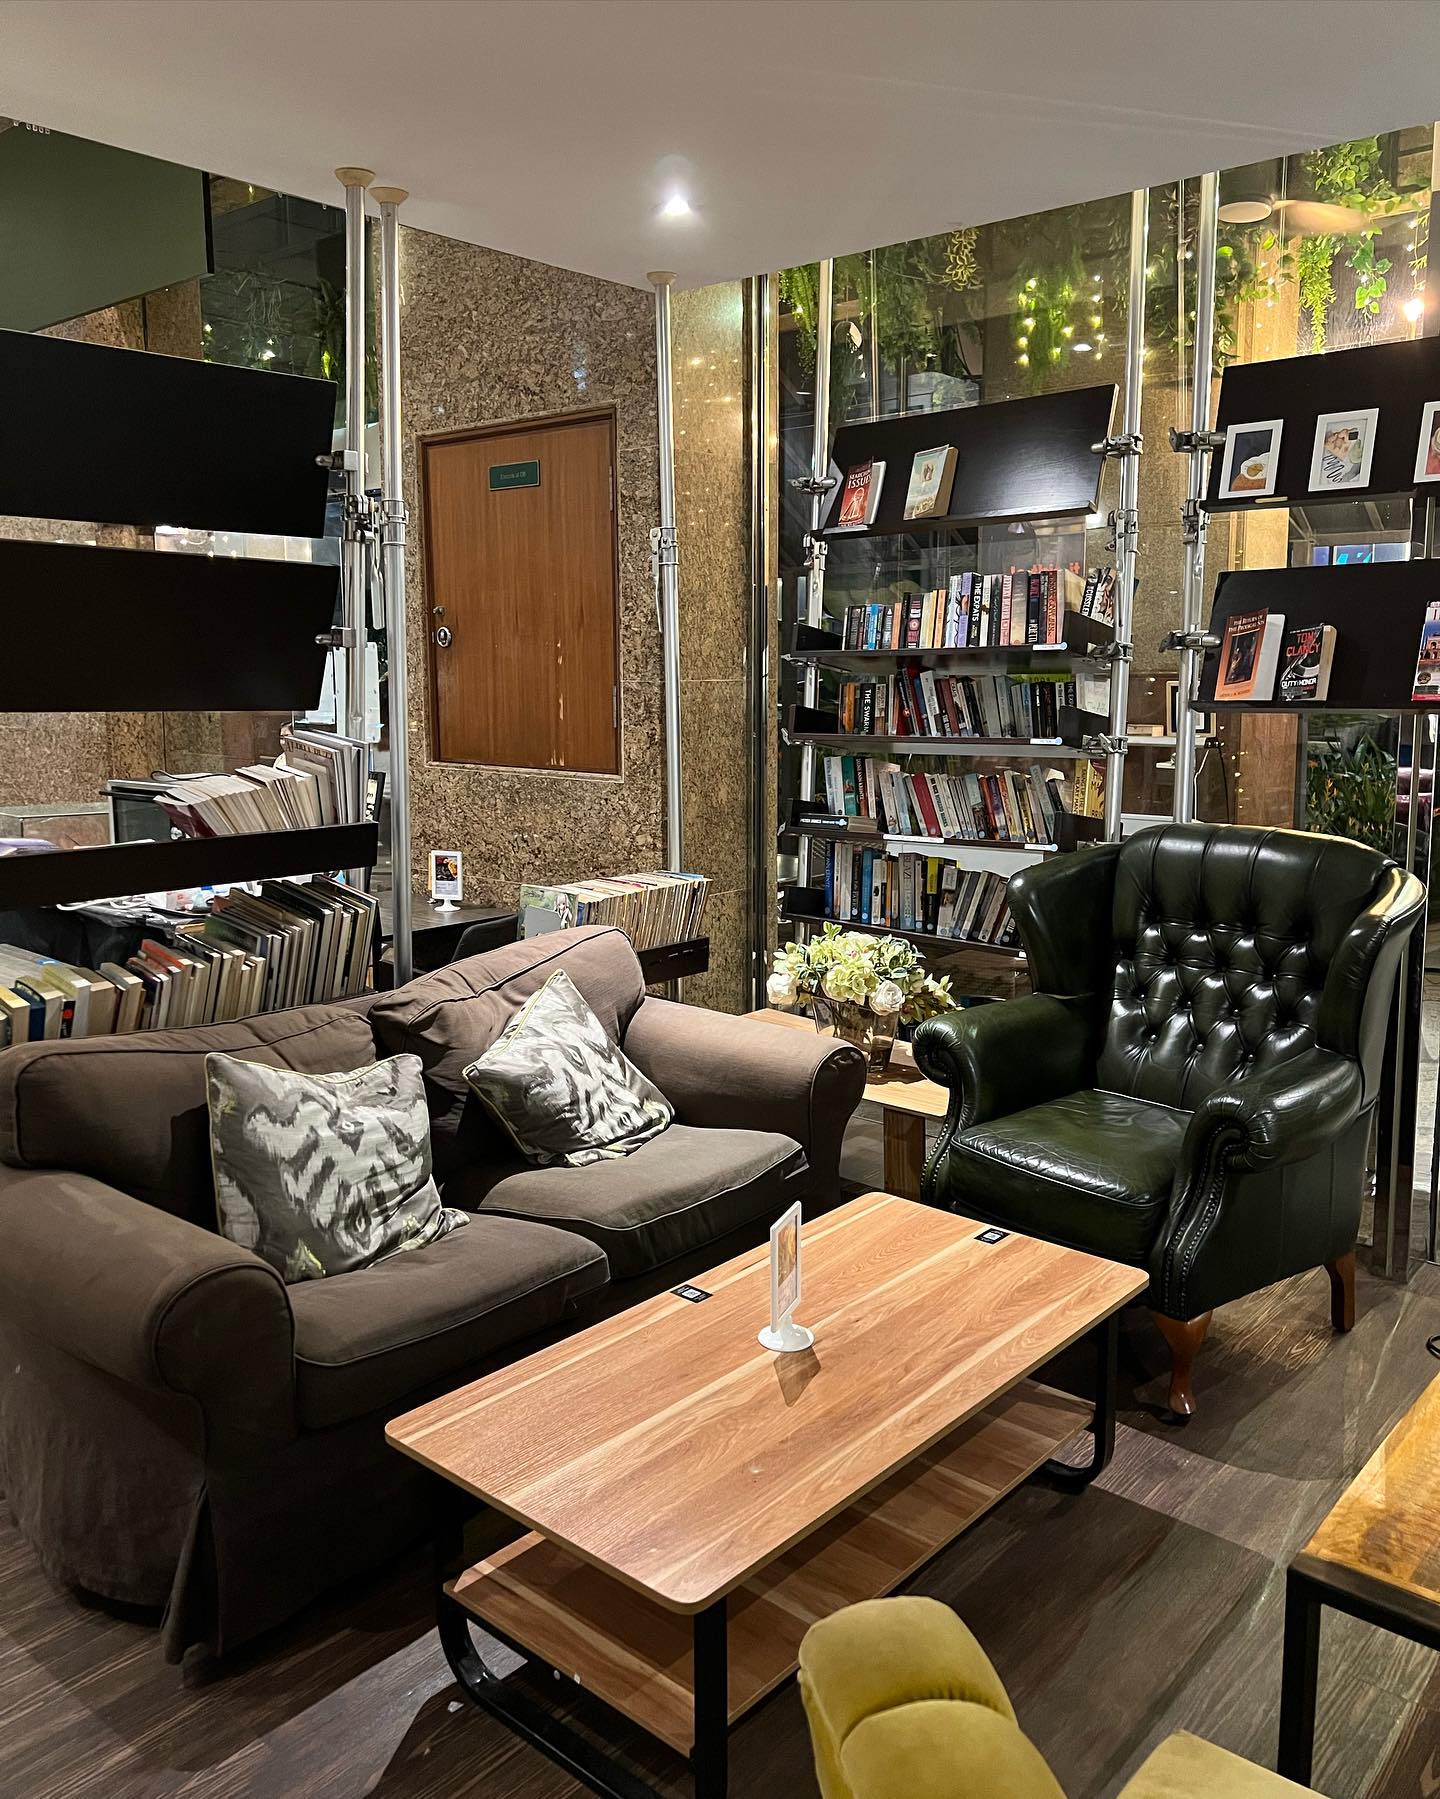 Tempat bersantai di Singapura - The Book Cafe